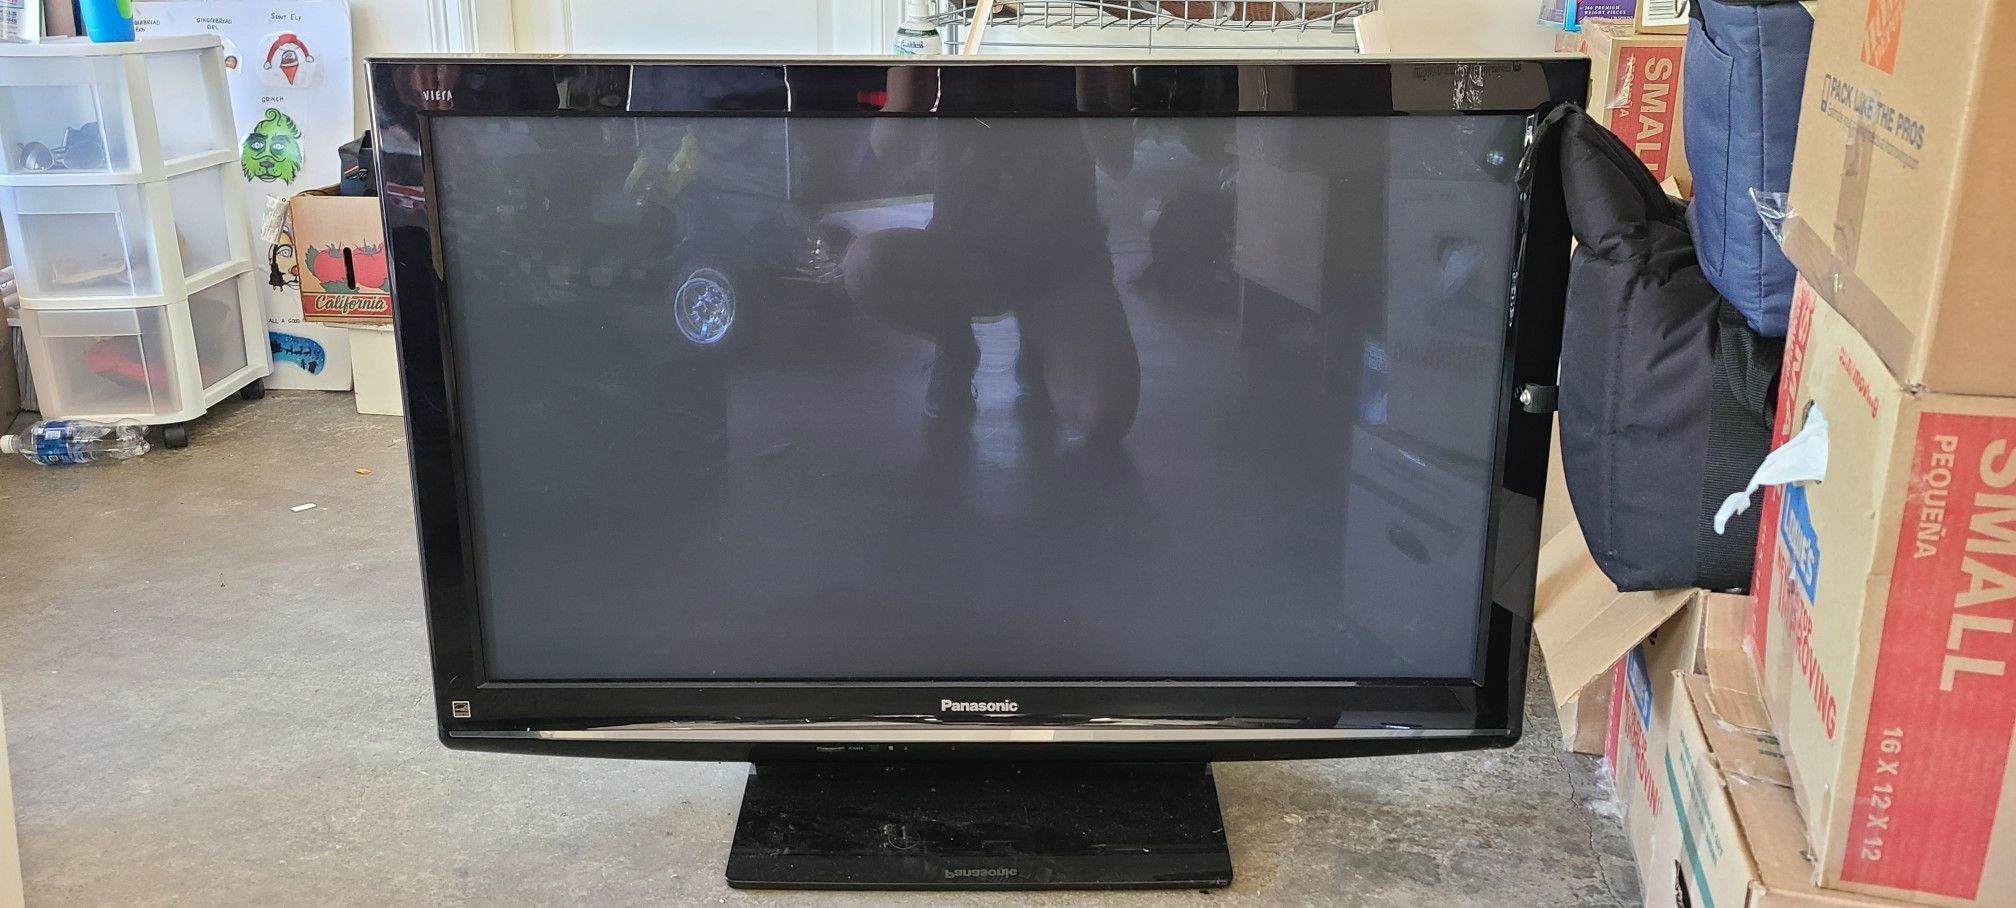 42" Panasonic flatscreen TV